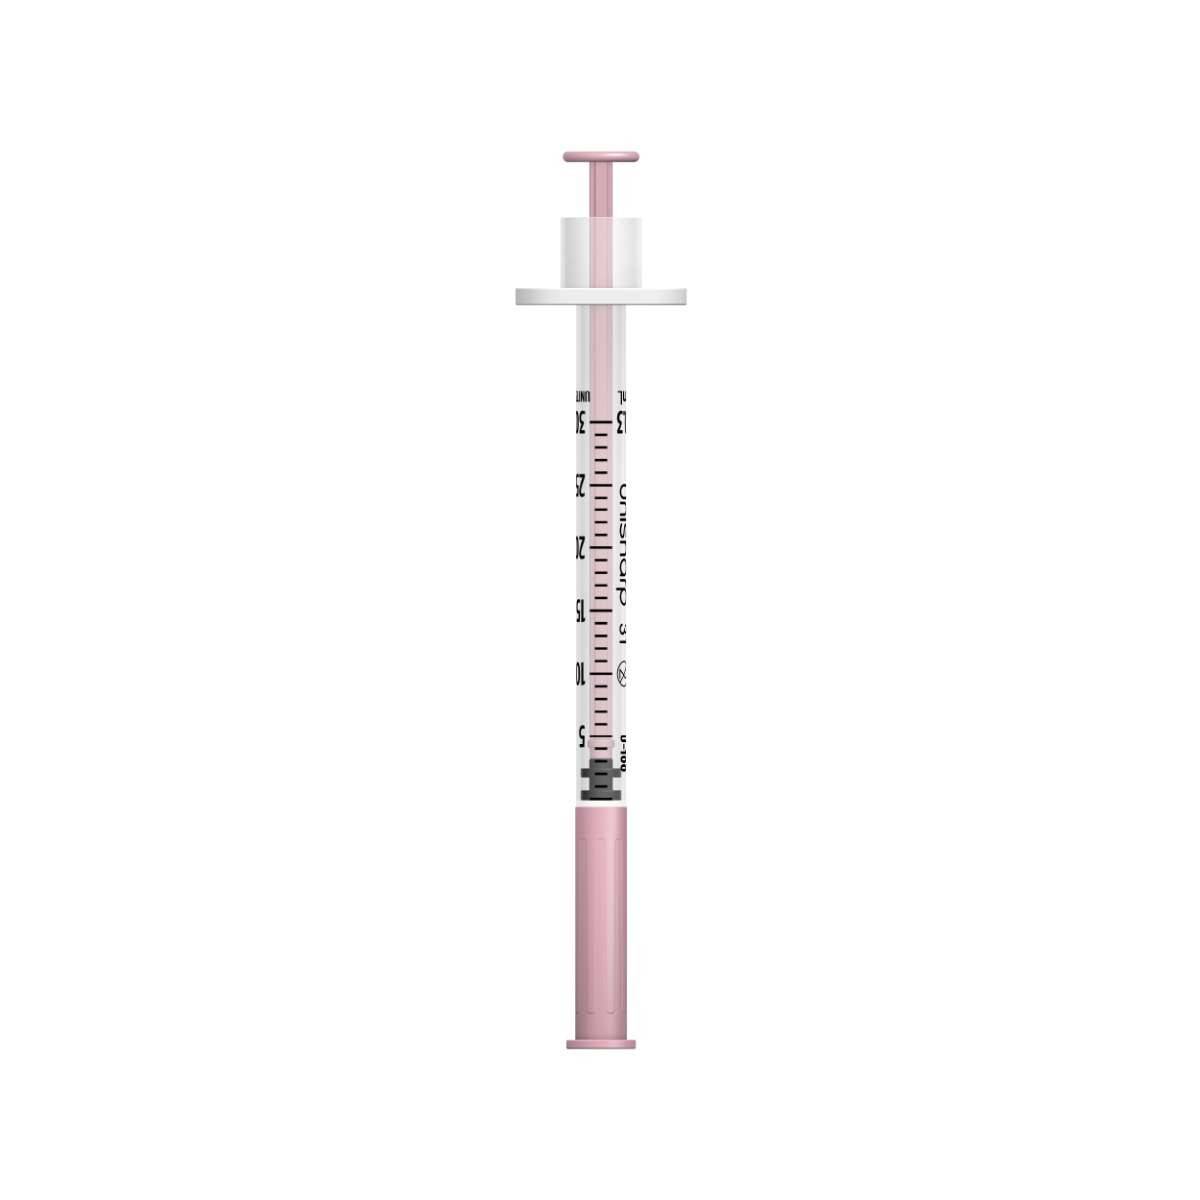 0.3ml 8mm 31g Unisharp Syringe and Needle u100 - UKMEDI